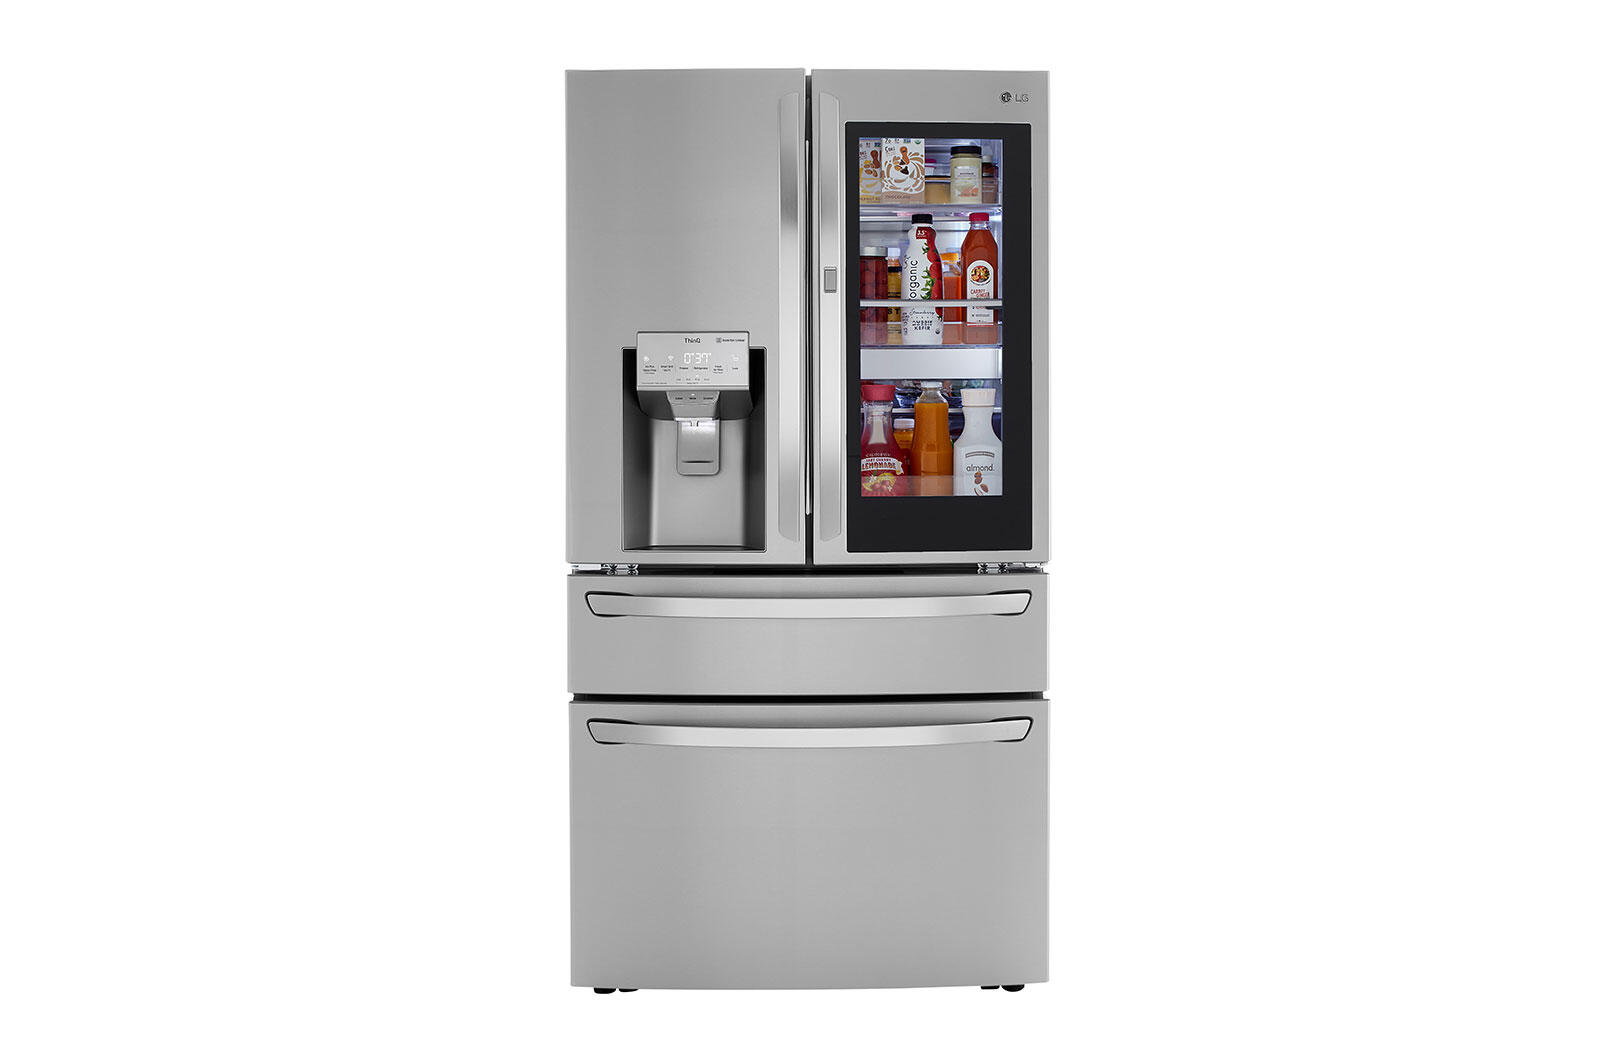 LG LRMVS3006S 30 cu. ft. Smart wi-fi Enabled InstaView(TM) Door-in-Door(R) Refrigerator with Craft Ice(TM) Maker